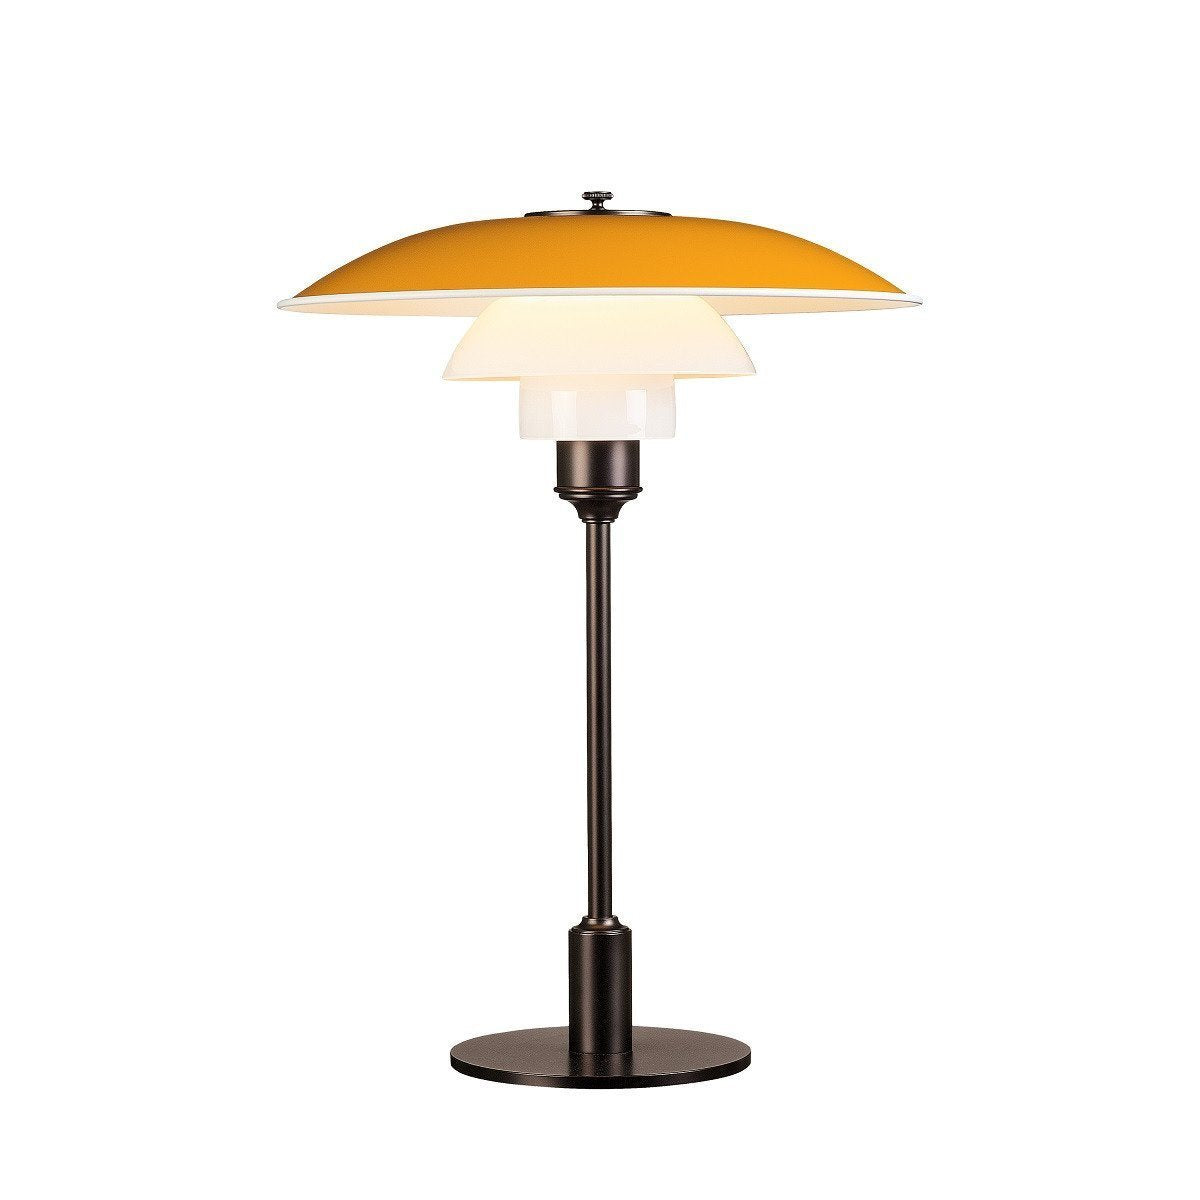 Louis Poulsen Ph 3 1/2 2 1/2 Table Lamp, Yellow